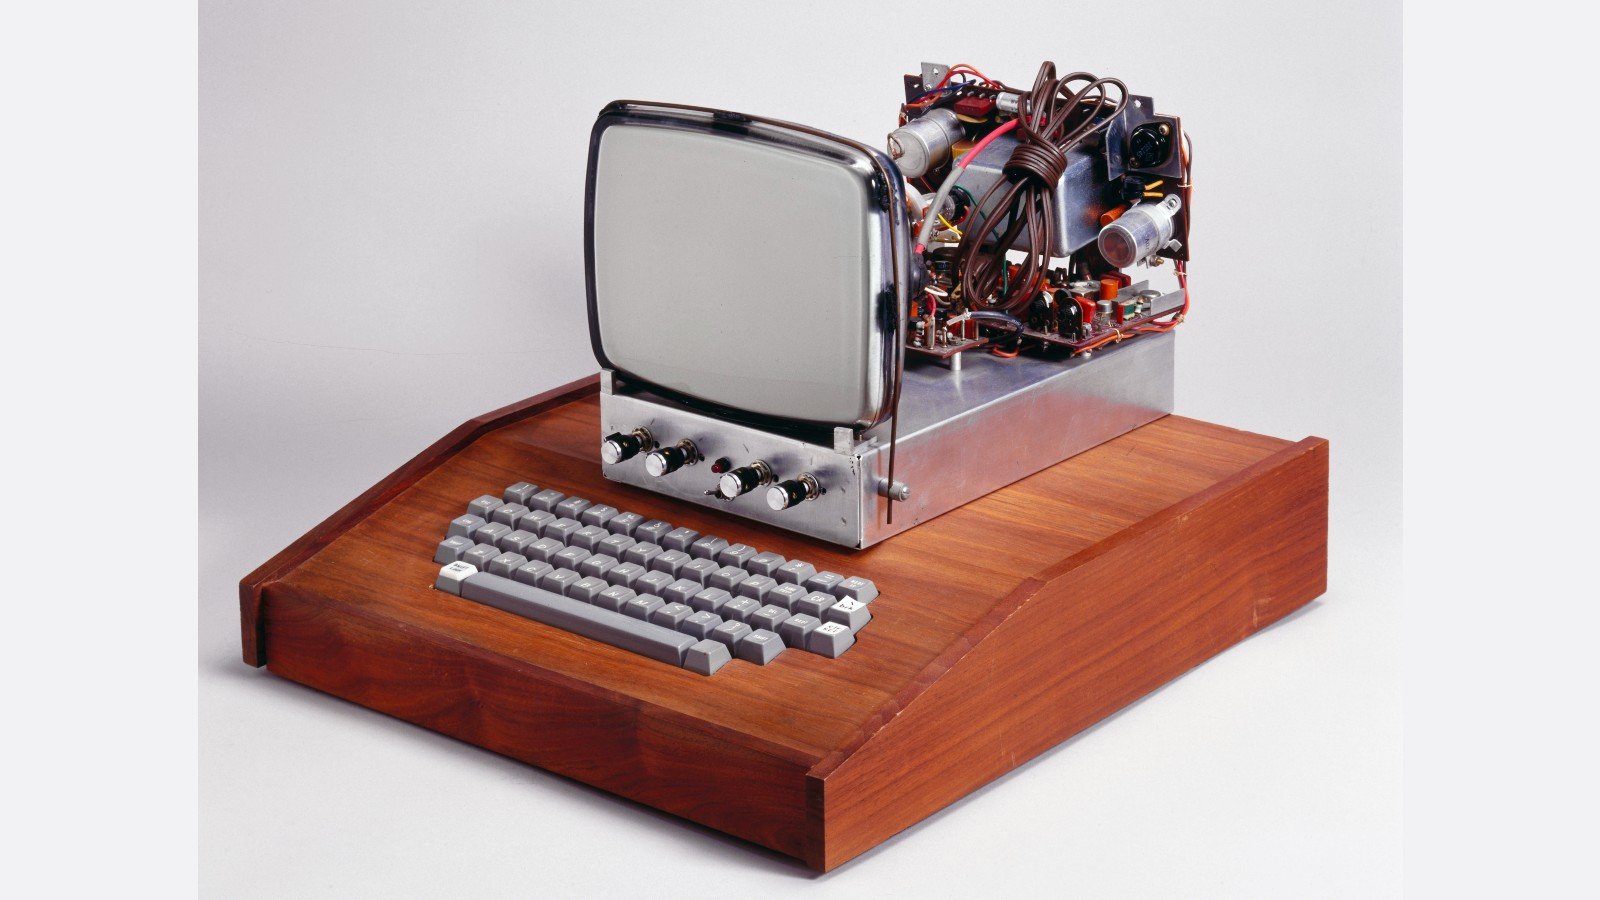 أول جهاز كمبيوتر بمعالجين